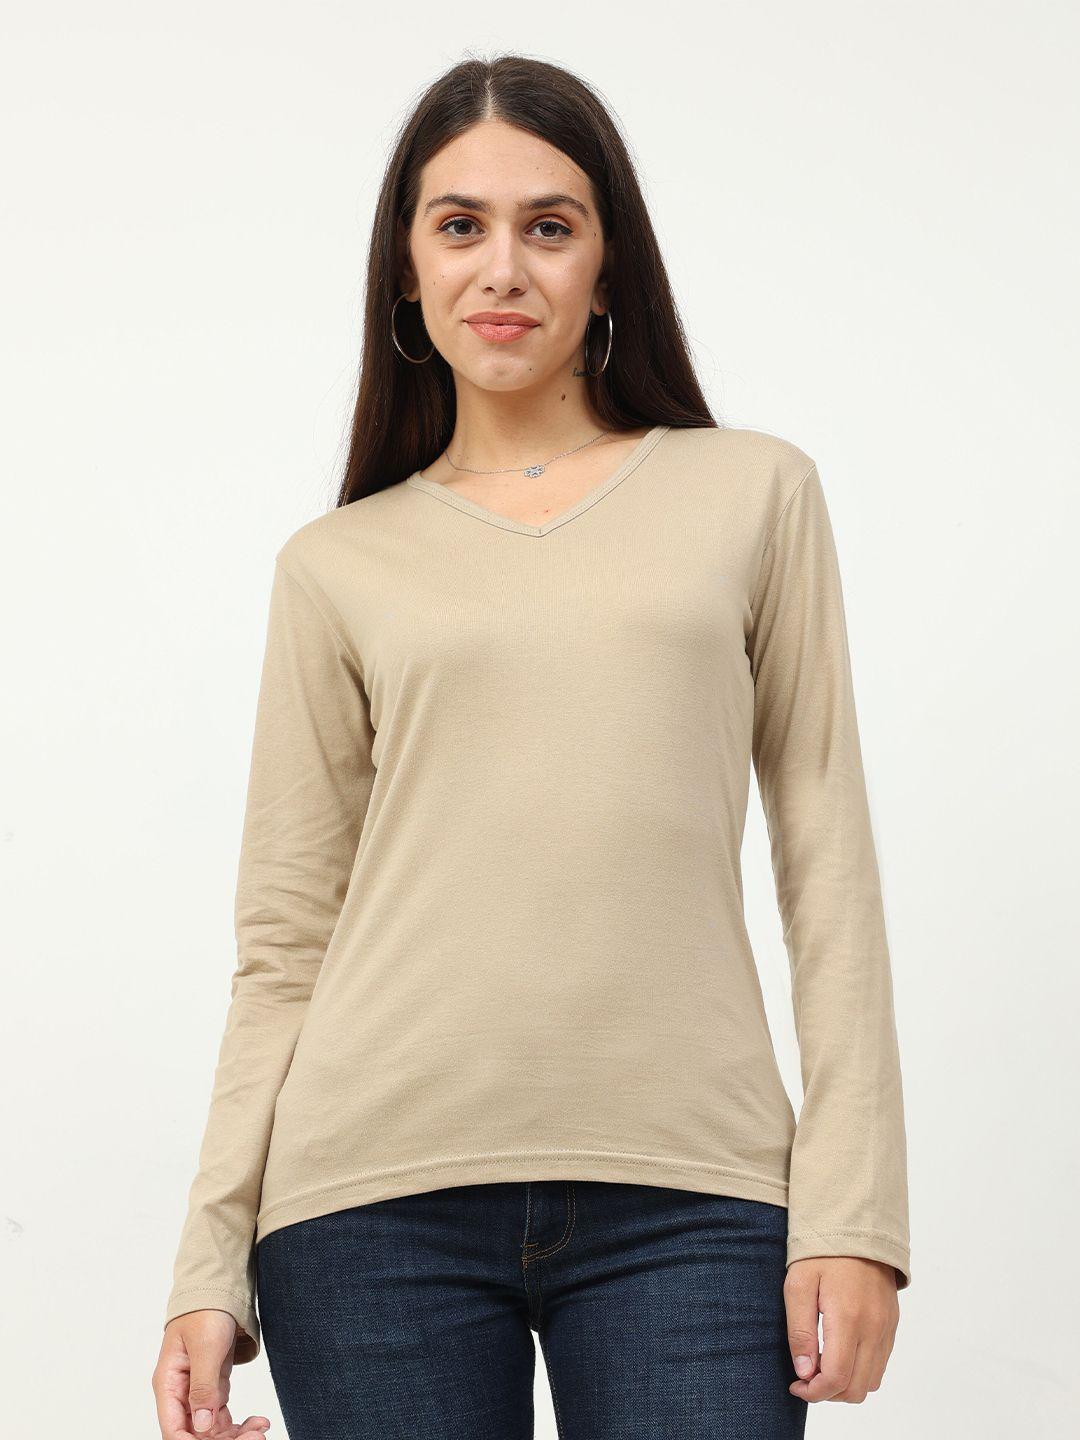 fleximaa-women-beige-v-neck-t-shirt